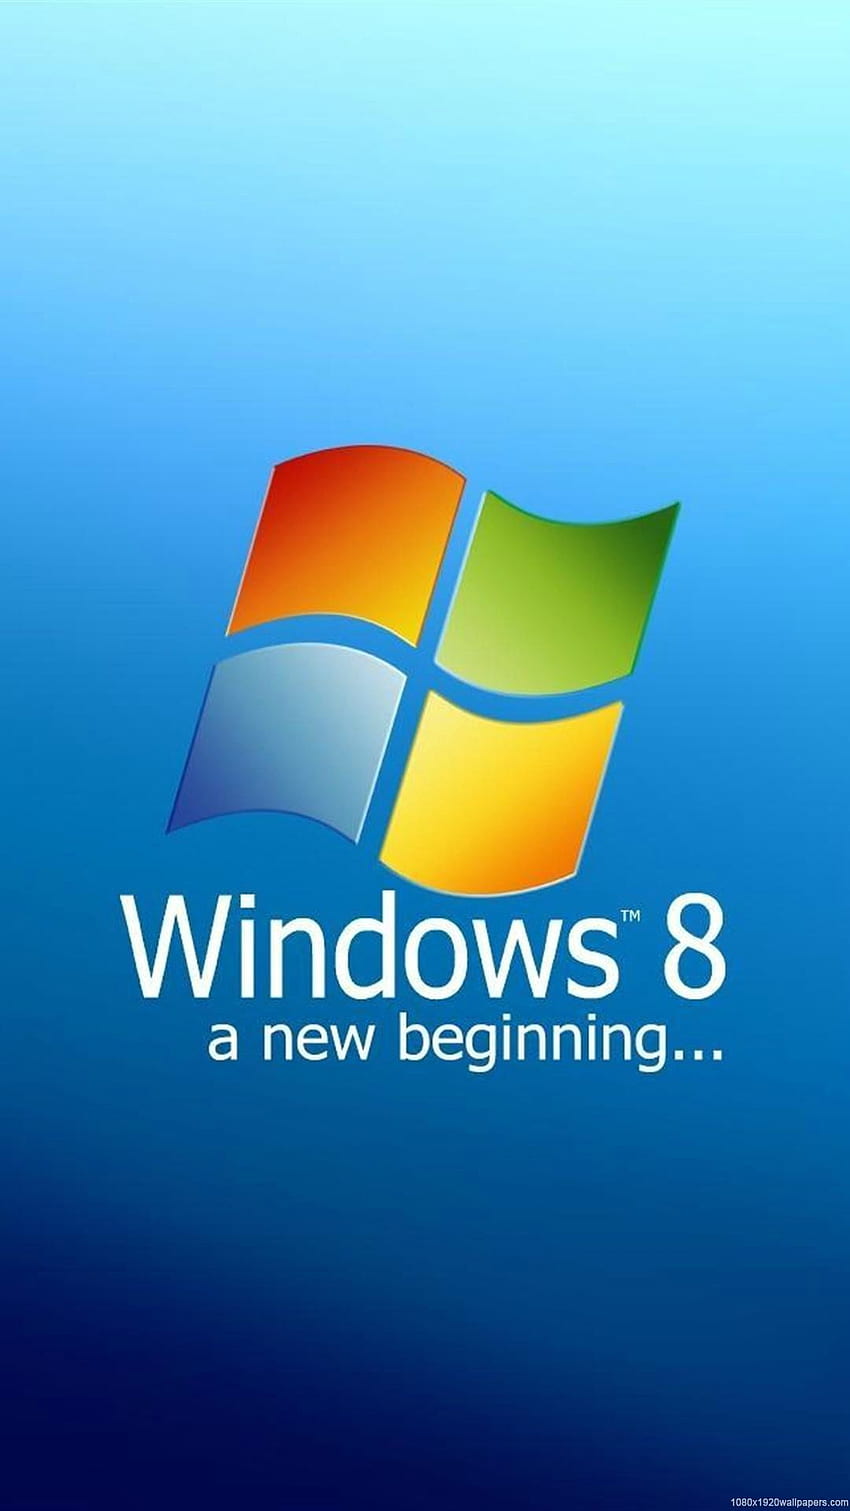 Hình nền cho máy tính Windows 7 - Không gian làm việc của bạn sẽ trở nên rực rỡ hơn với các lựa chọn hình nền độc đáo và đẹp mắt. Tất cả đều dành cho nền tảng máy tính Windows 7 của bạn, giúp bạn có thậm chí là những phút giây nghỉ ngơi tuyệt vời hơn.